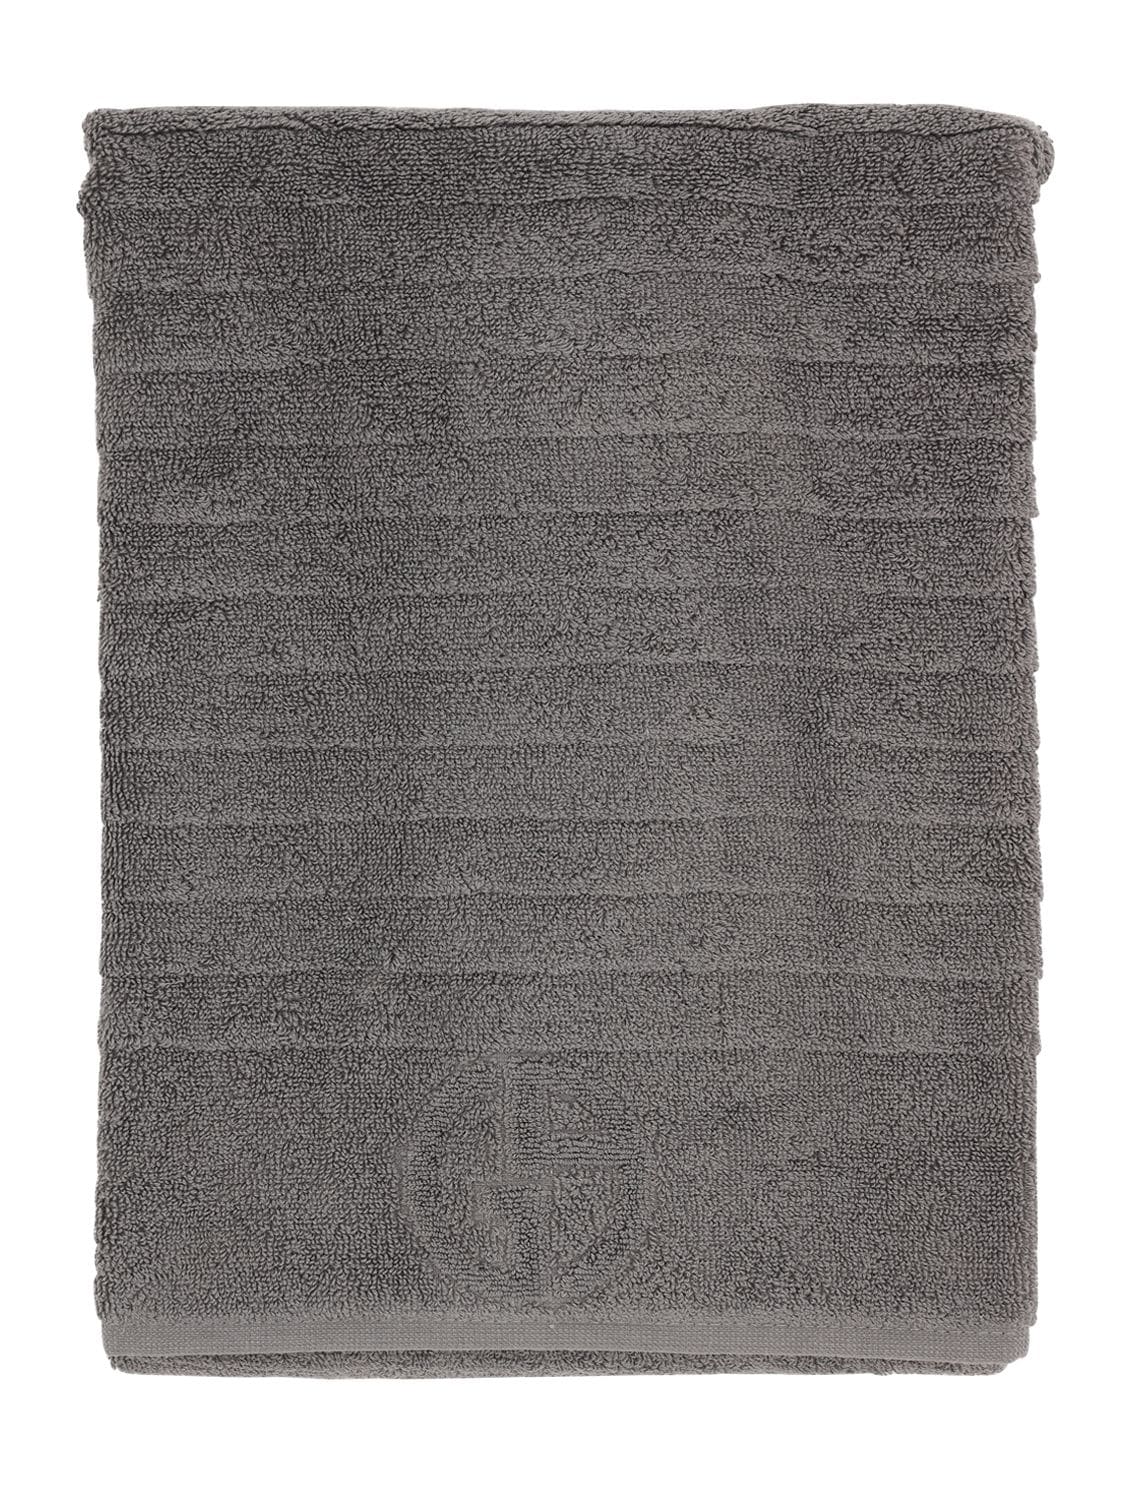 Armani/casa Dorotea Cotton Bath Towel In Dark Grey